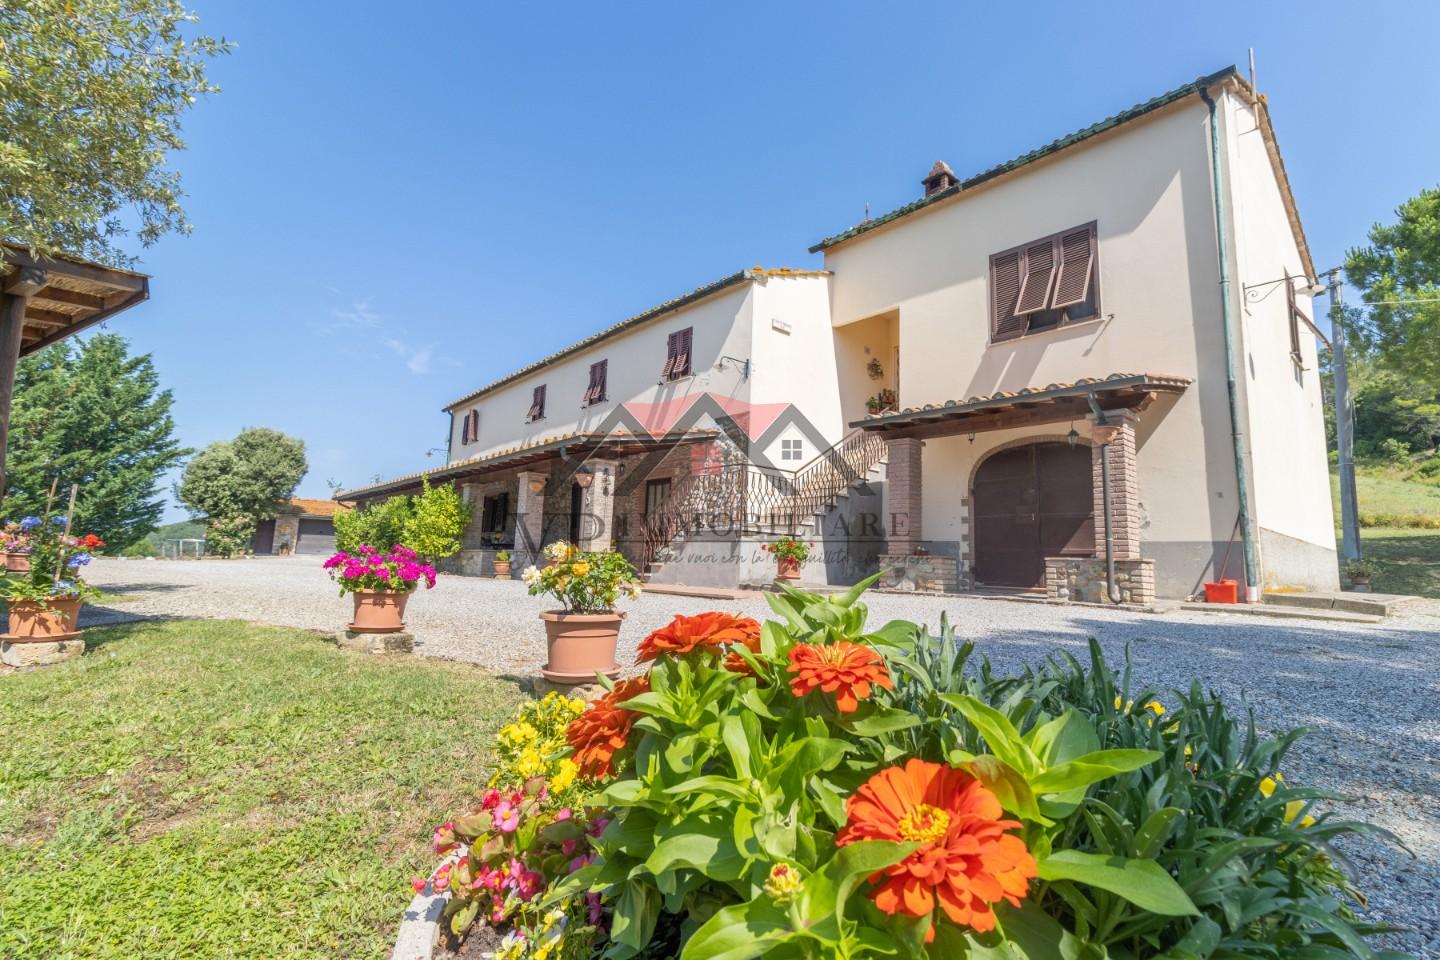 Rustico / Casale in vendita a Pomarance, 10 locali, prezzo € 550.000 | PortaleAgenzieImmobiliari.it